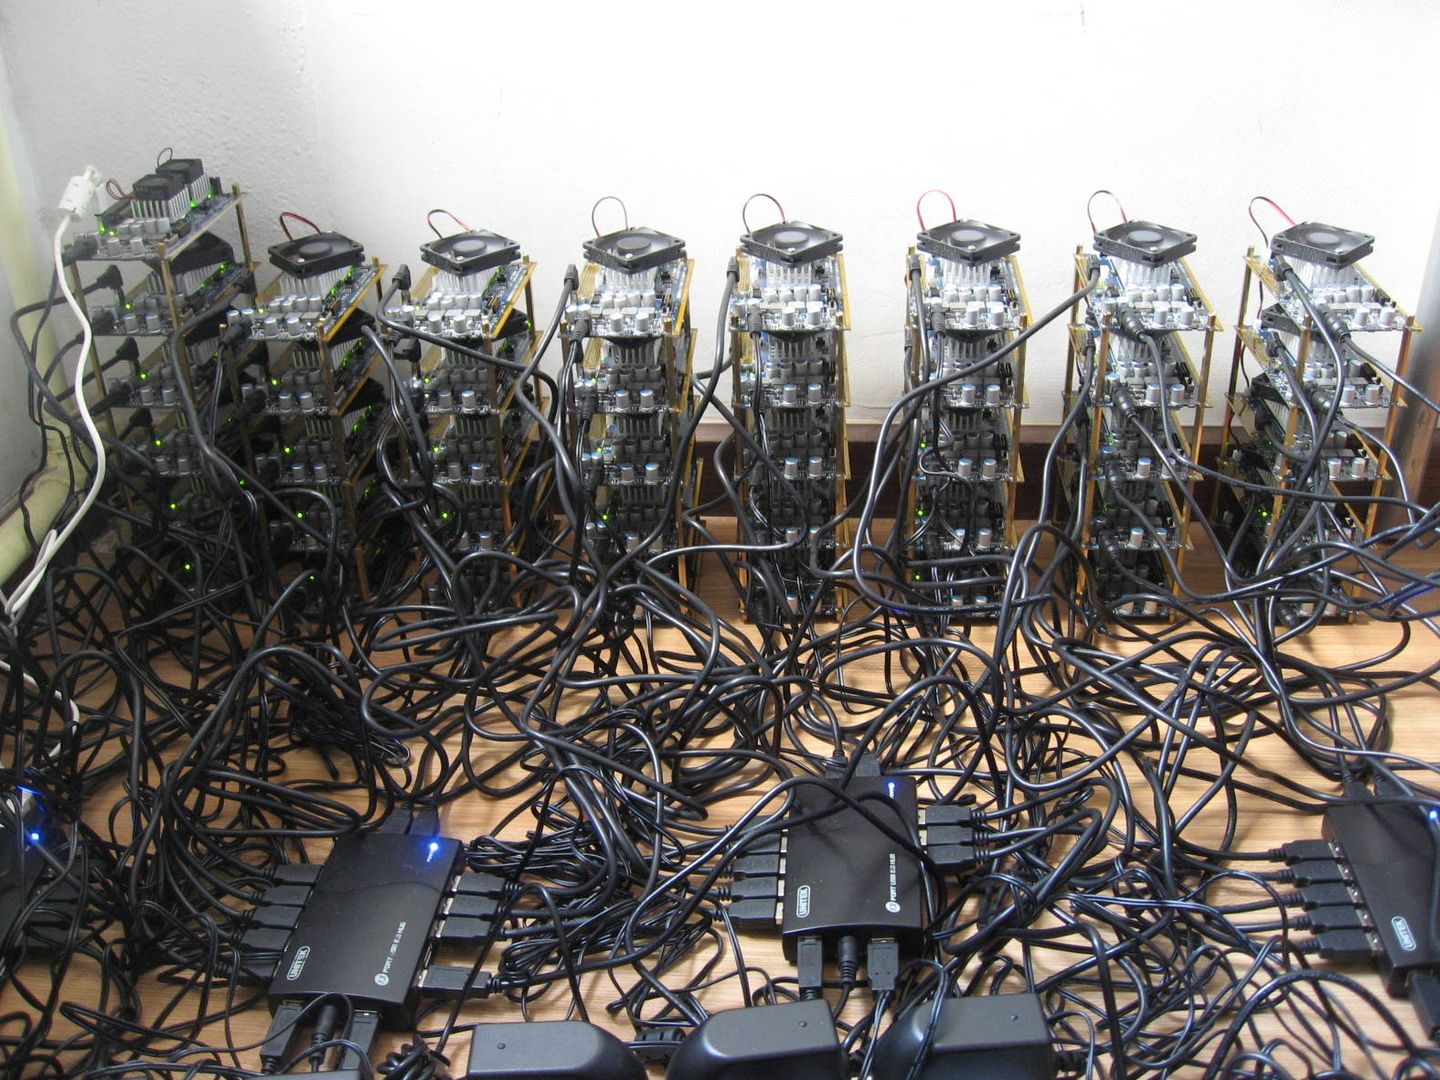  Equipos de usuario minando Bitcoin (Fuente: Xiangfu/Wikimedia)